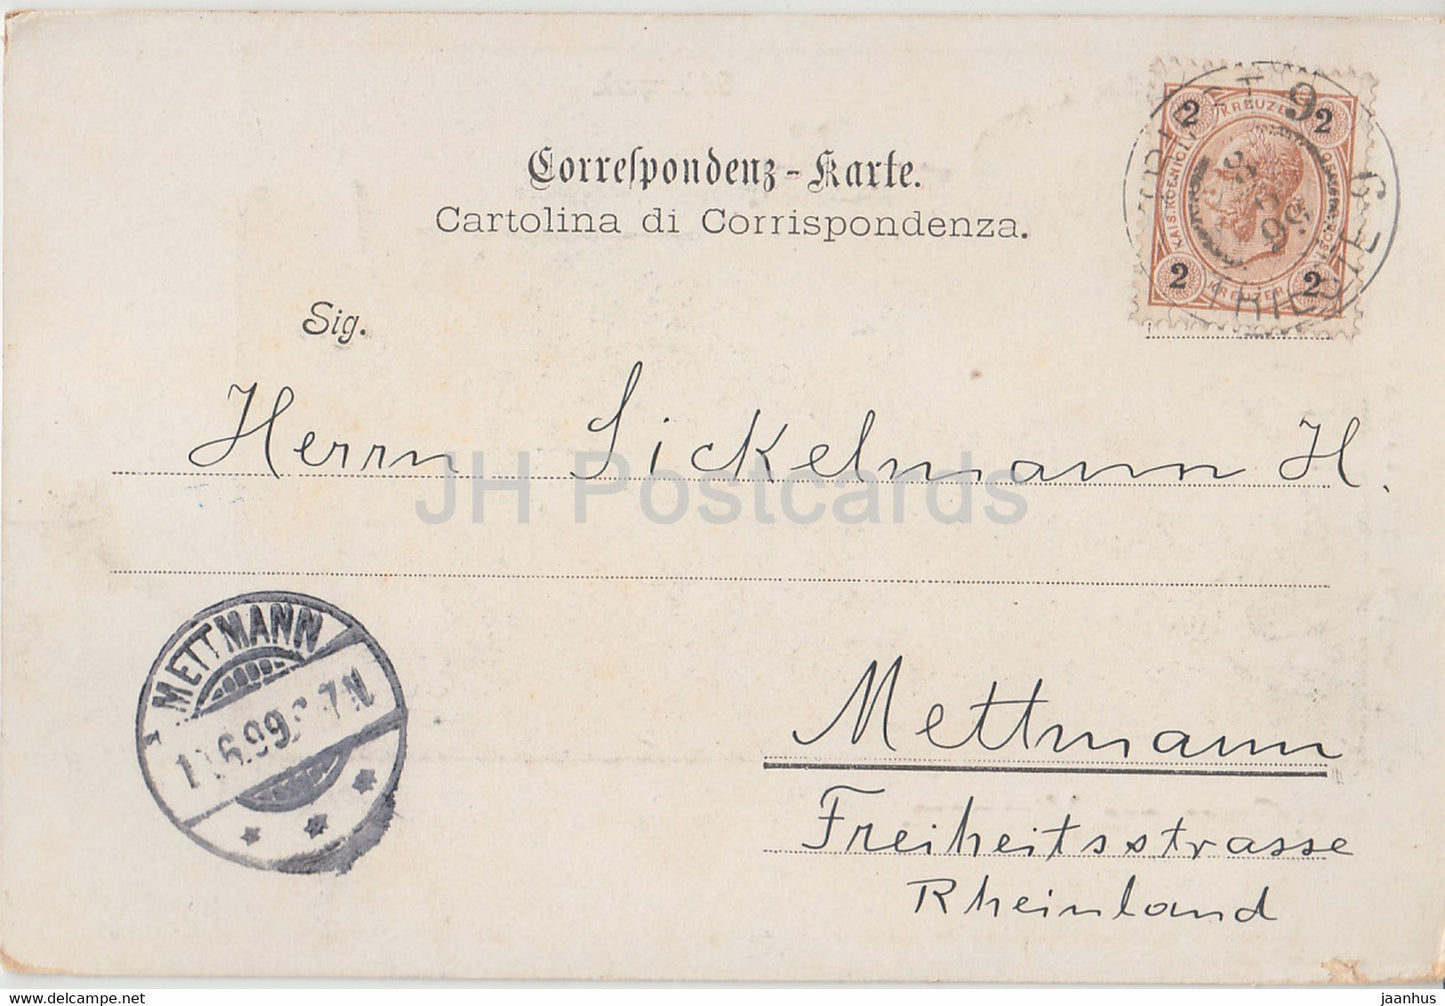 Gruss aus Miramare - Triest - Triest - Schlosspark - alte Postkarte - 1899 - Italien - gebraucht